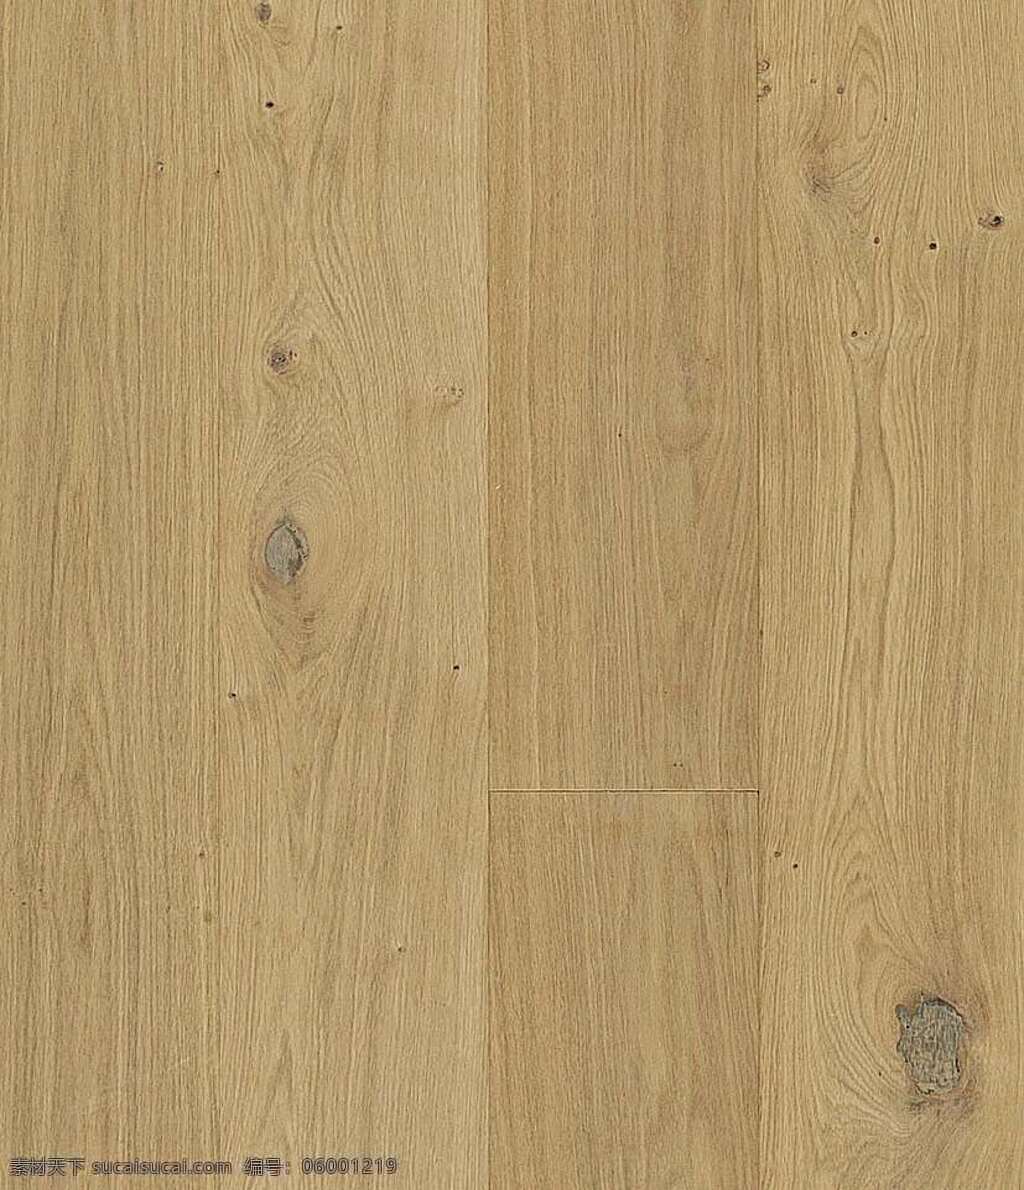 木地板 贴图 地板 木地板贴图 木地板效果图 装修效果图 木地板材质 地板设计素材 装饰素材 室内装饰用图